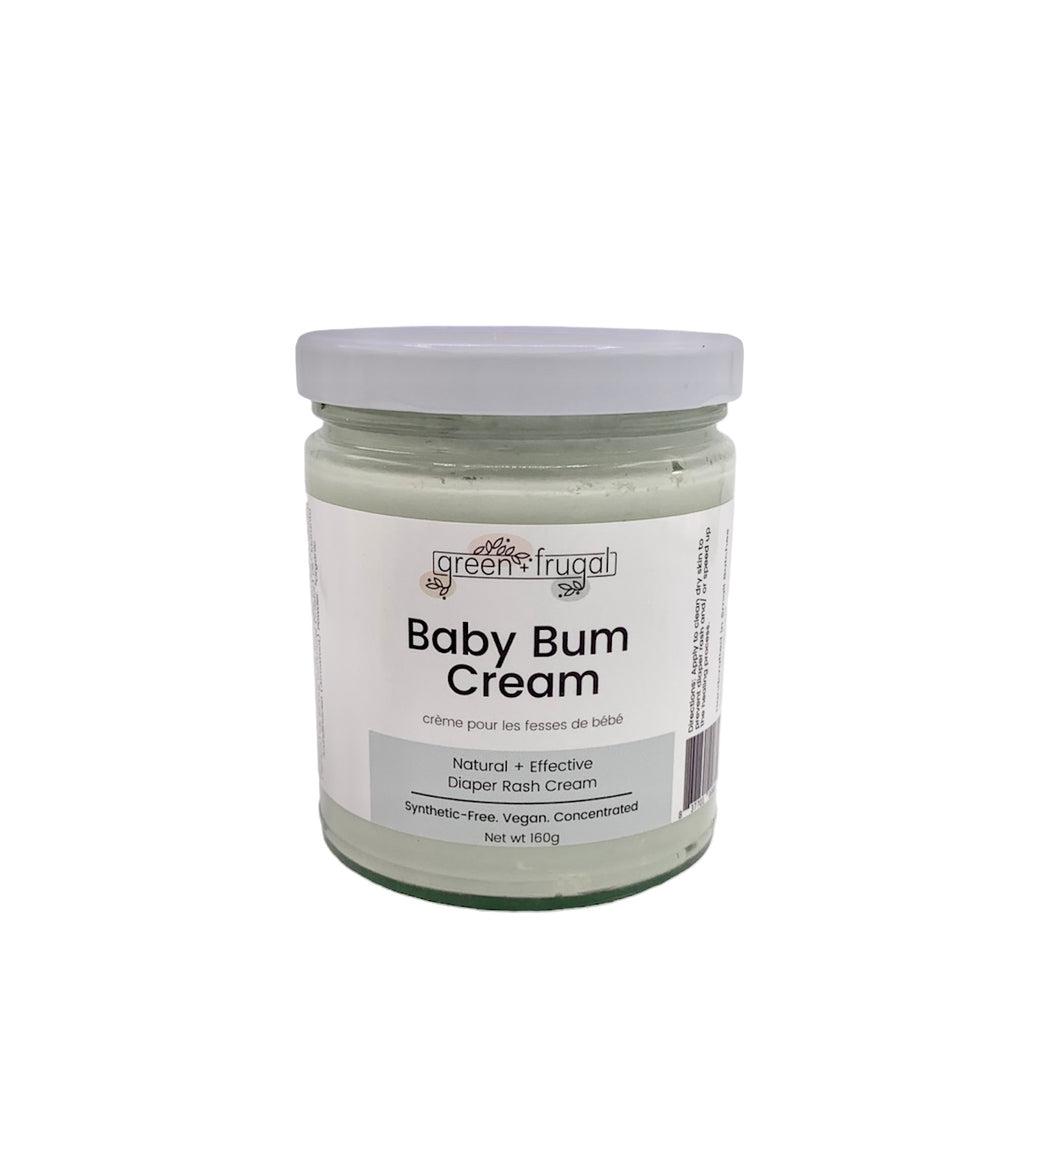 Baby Bum Cream